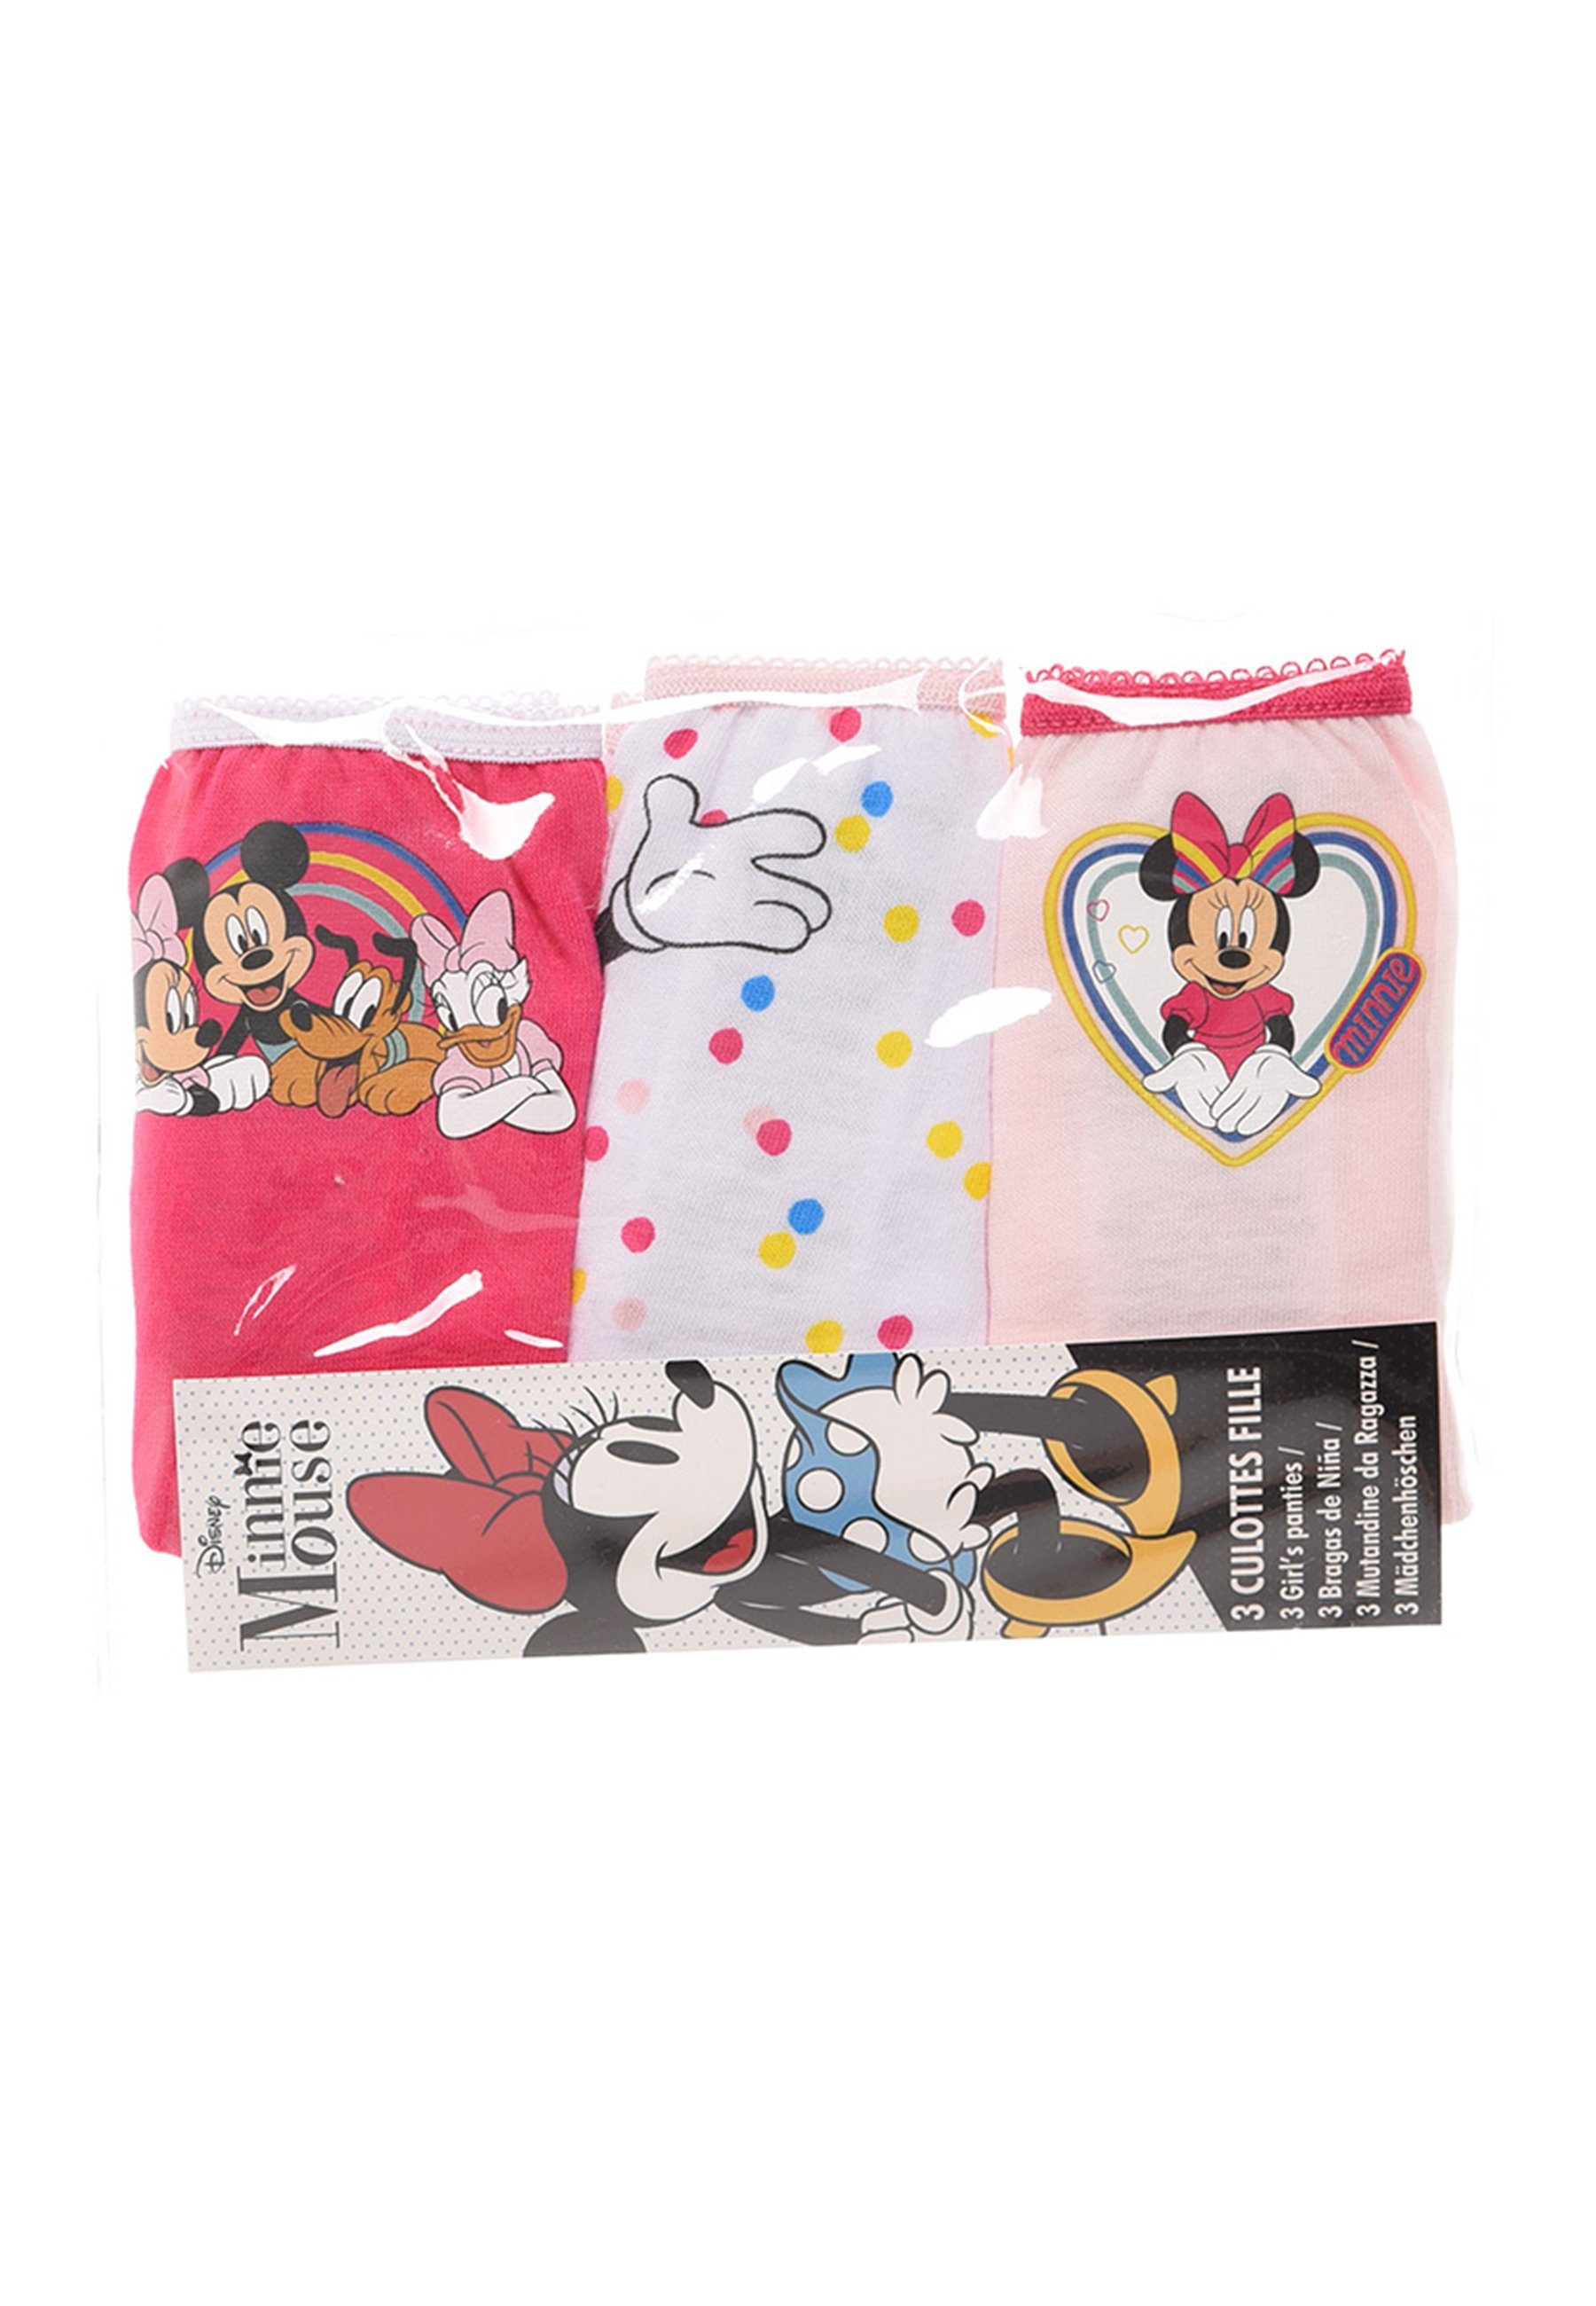 Minnie Mouse Schlüpfer Kinder Mädchen Disney Pack Slip Unterhosen 3er